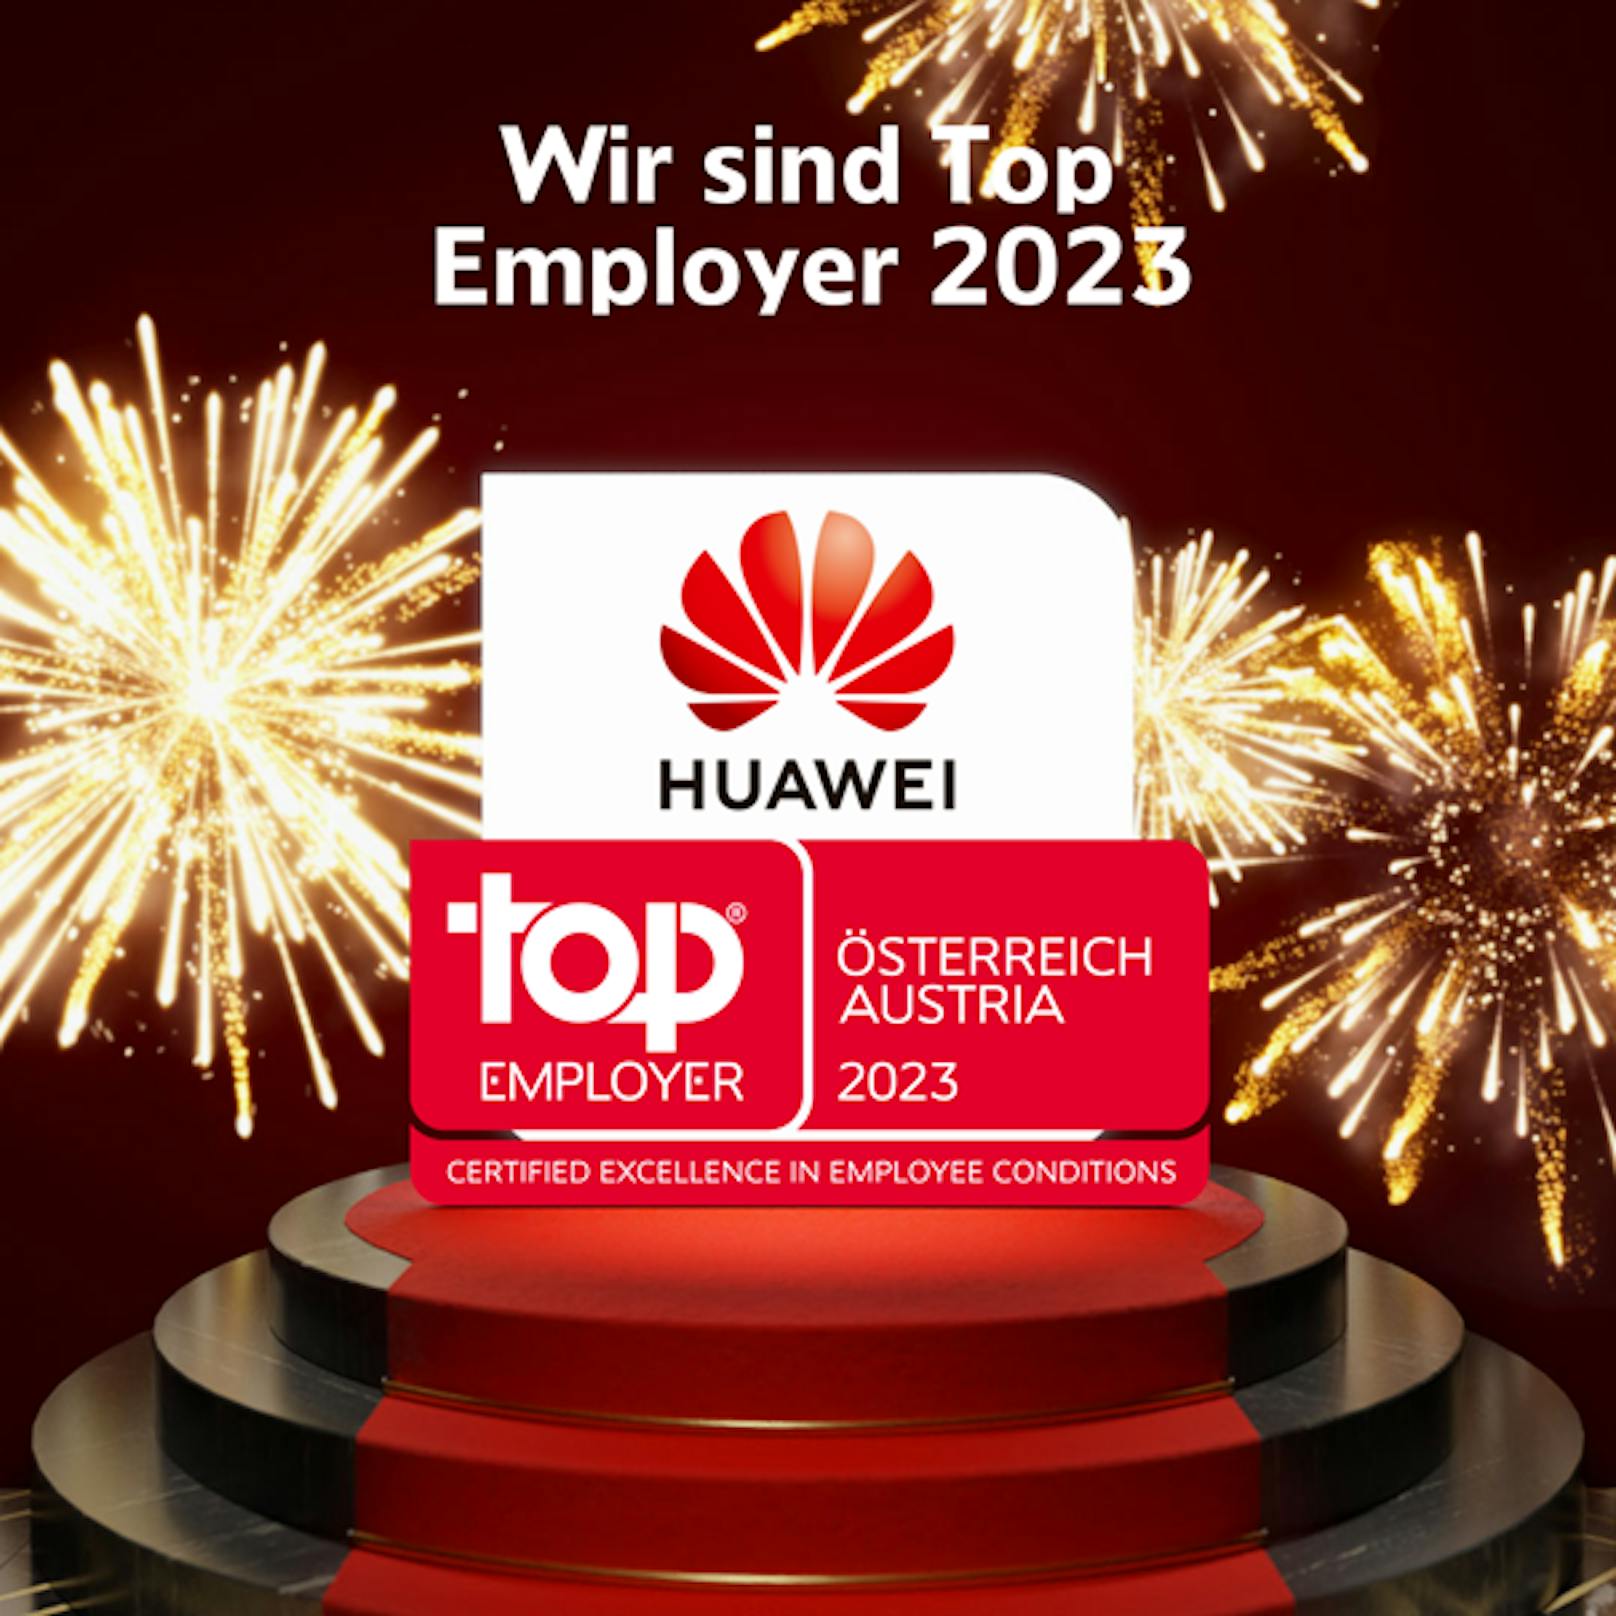 Huawei wurde als Top Employer 2023 in Österreich ausgezeichnet.